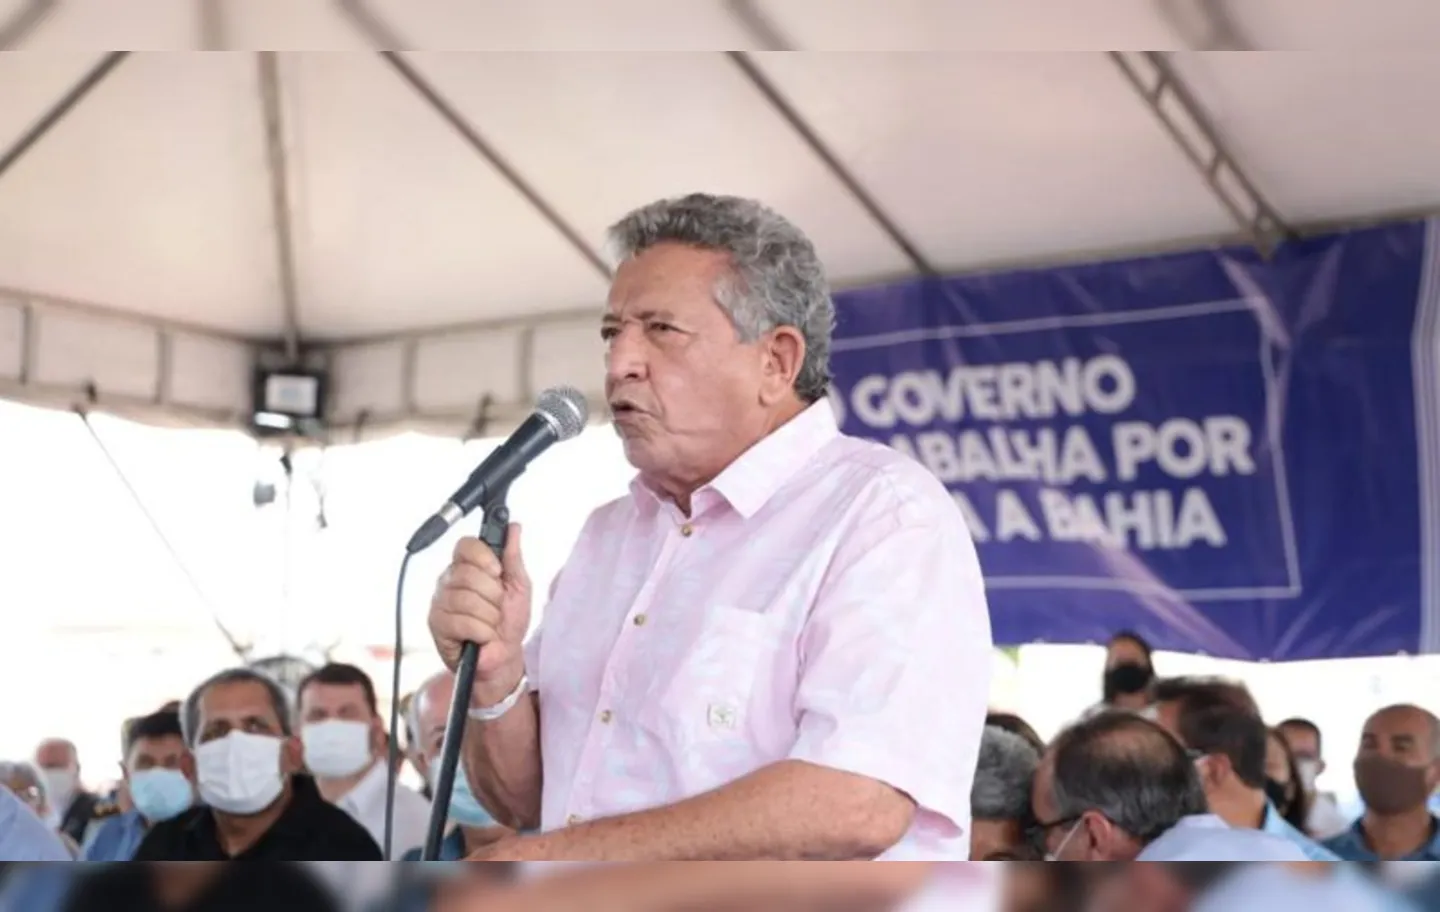 “Por isso está crescendo, movimentamos o mundo político nosso e isso reflete com força na opinião pública da Bahia”, disse Luiz Caetano